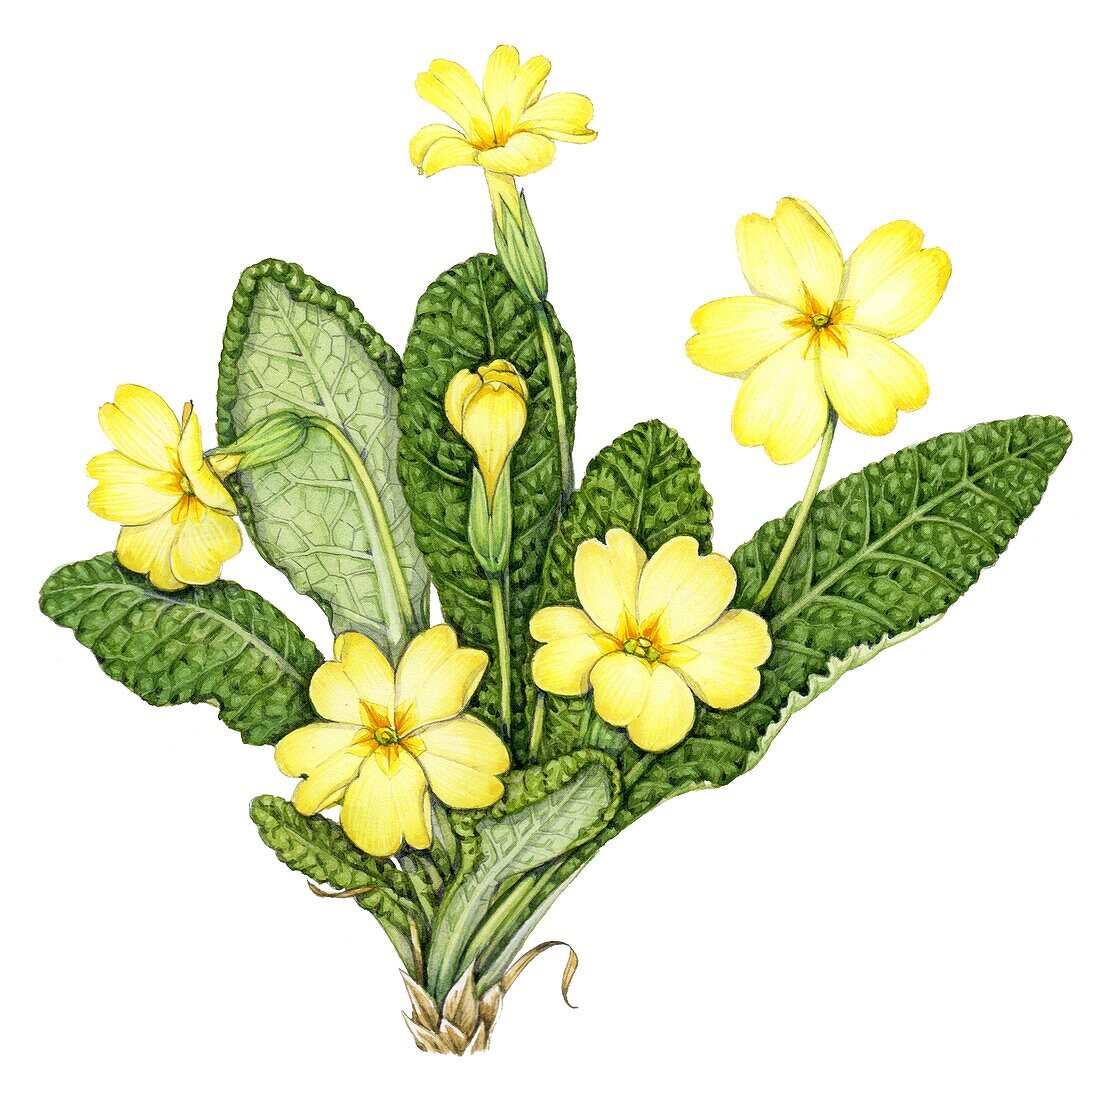 Primrose (Primula vulgaris), illustration